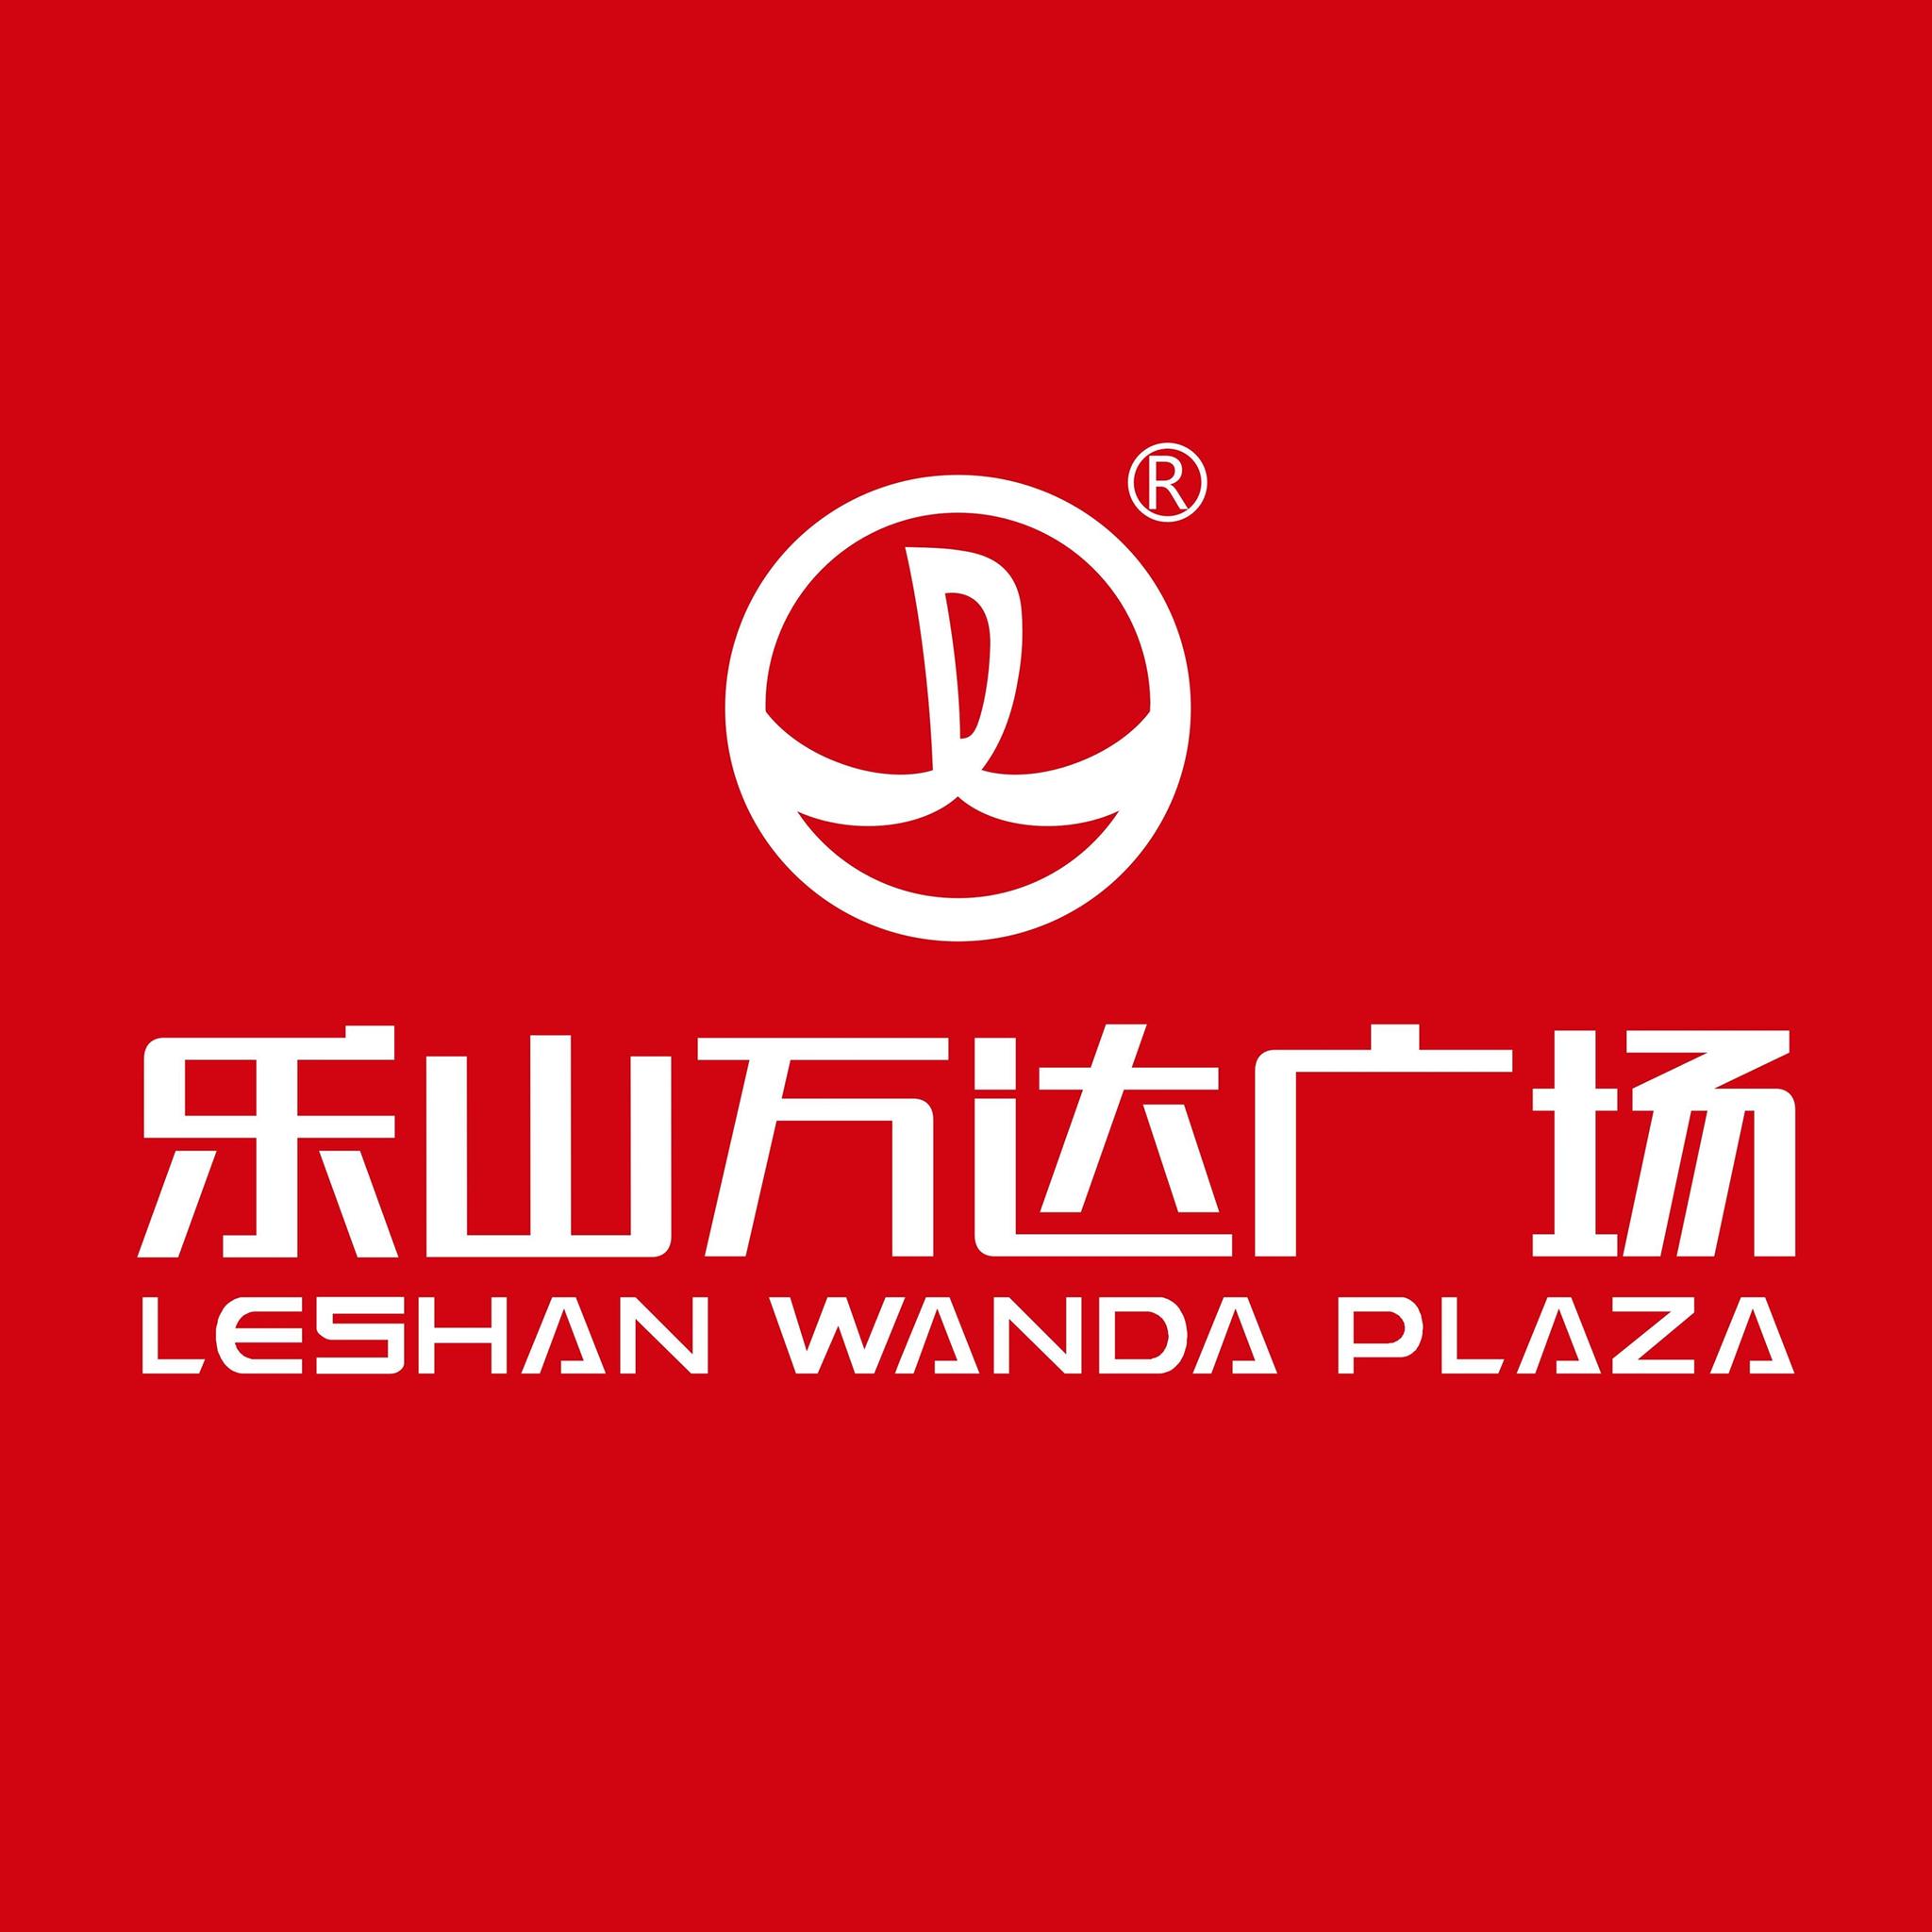 万达广场logo含义图片